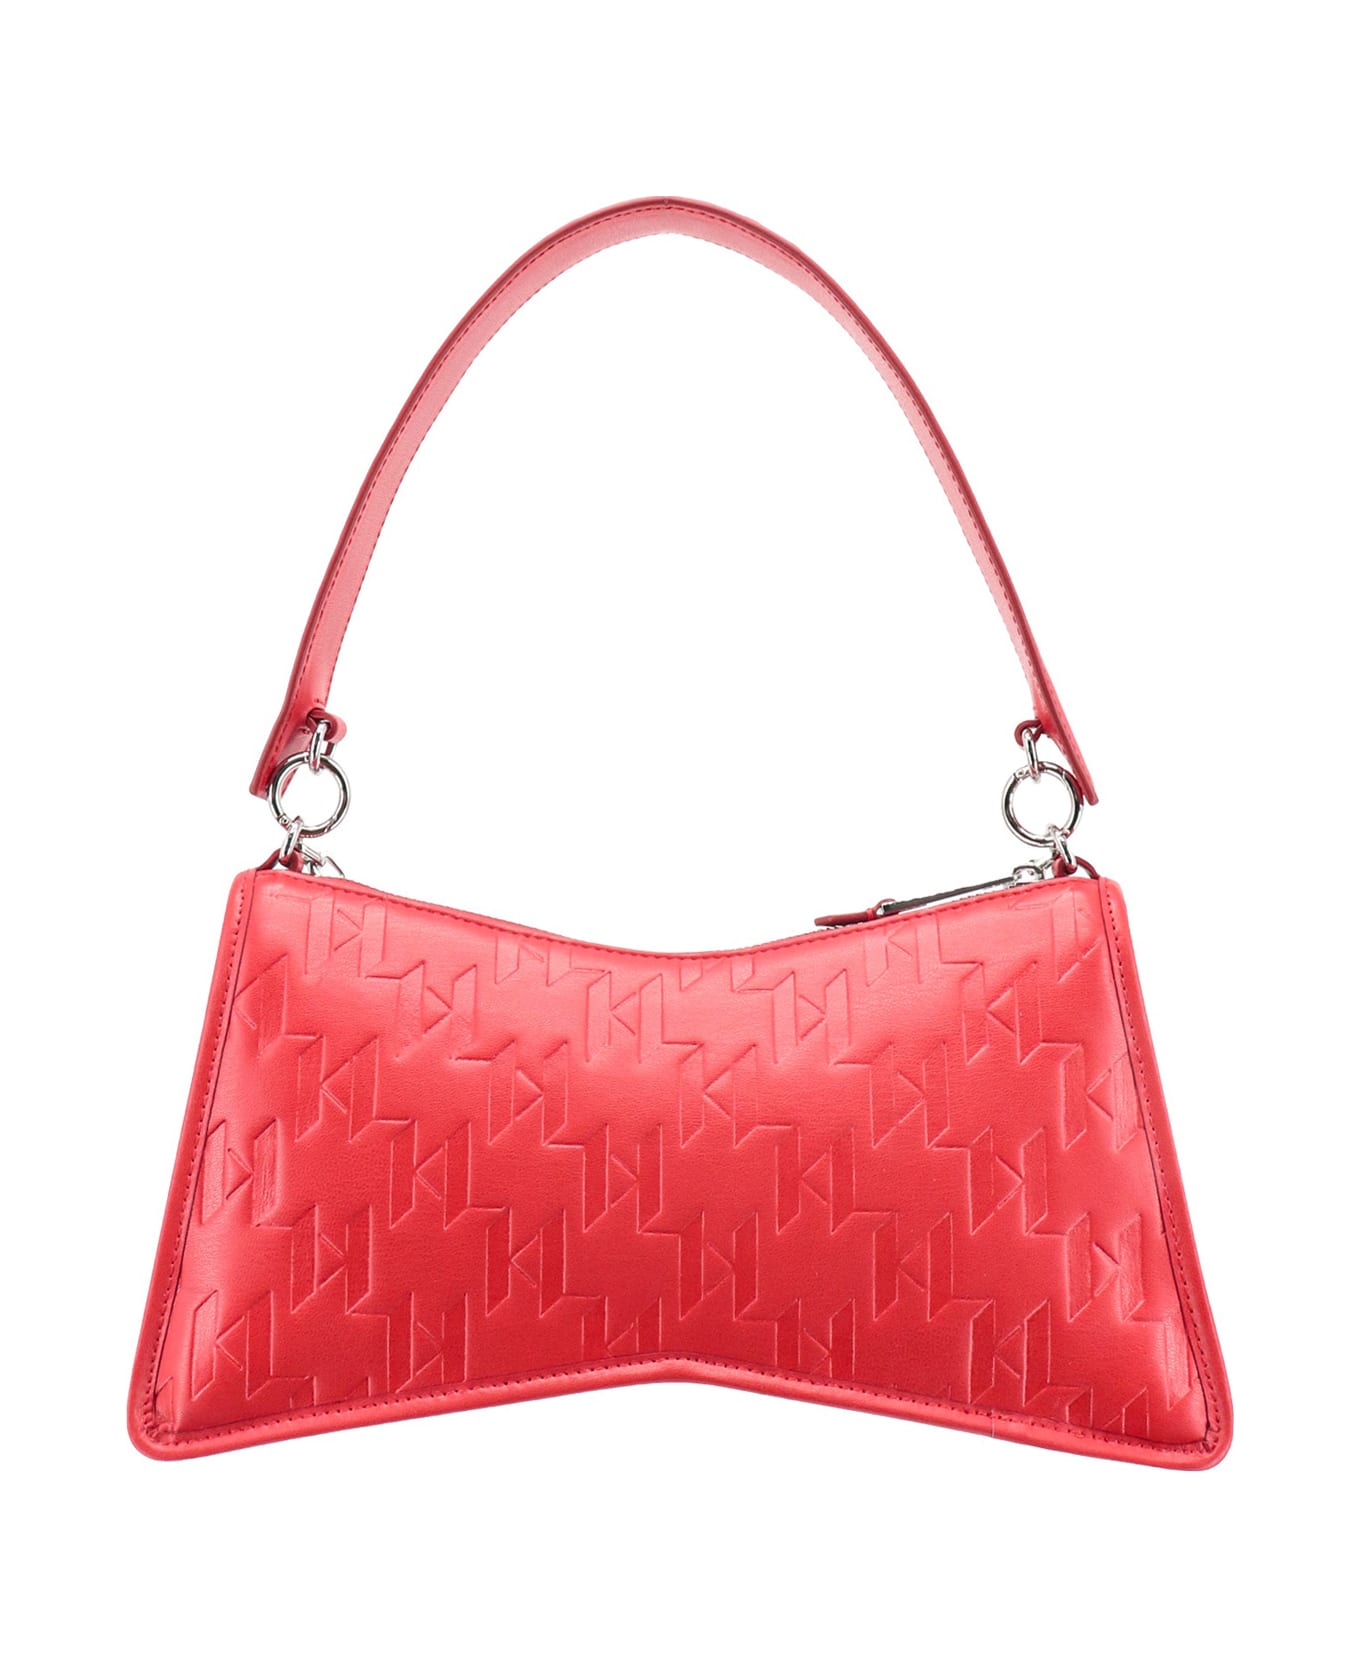 Karl Lagerfeld Shoulder Bag - Red